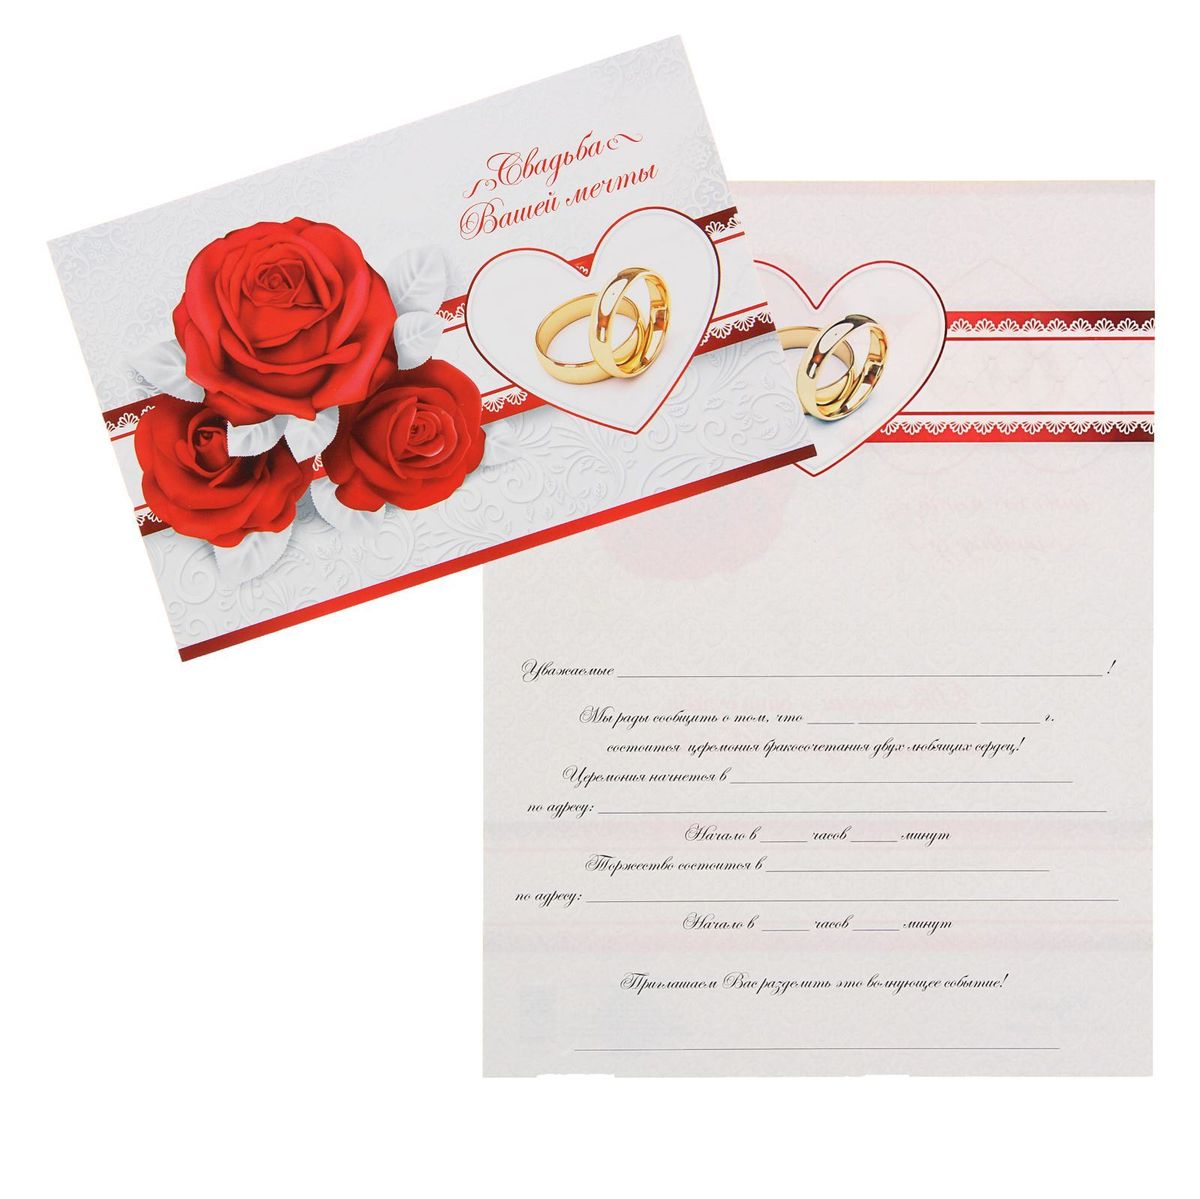 Онлайн открытка приглашение на свадьбу: Attention Required! | Cloudflare